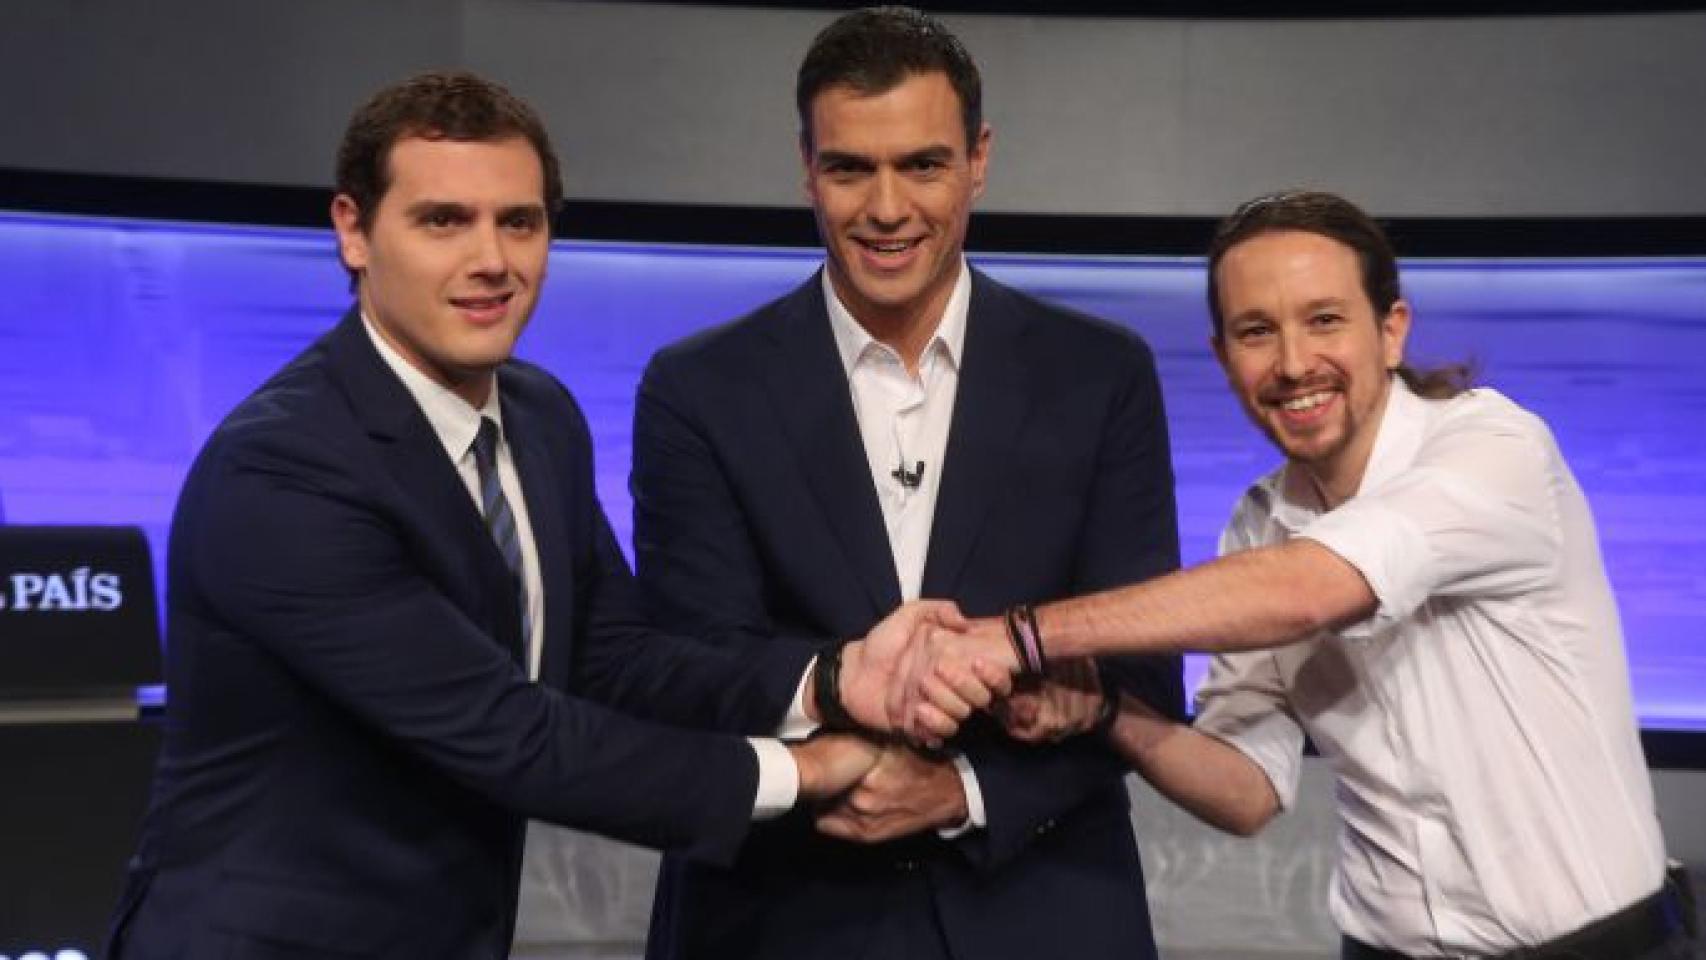 Albert Rivera, Pedro Sánchez y Pablo Iglesias se saludan antes de arrancar el debate (Uly Martín - El País)